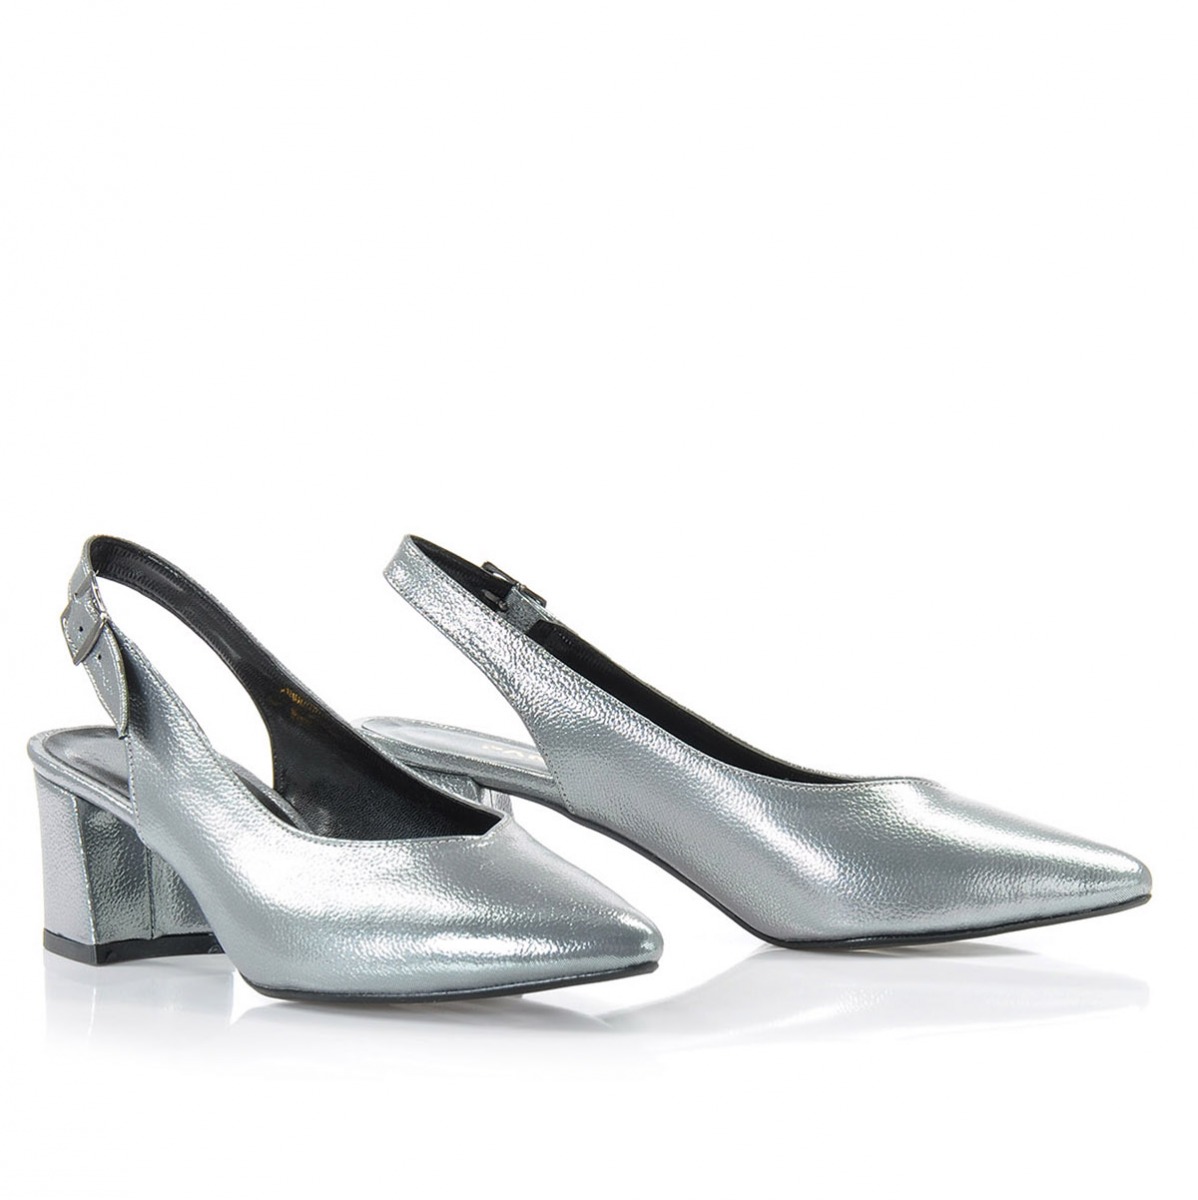 Flo Kadın  Gümüş Klasik Topuklu Ayakkabı VZN-086Y. 5